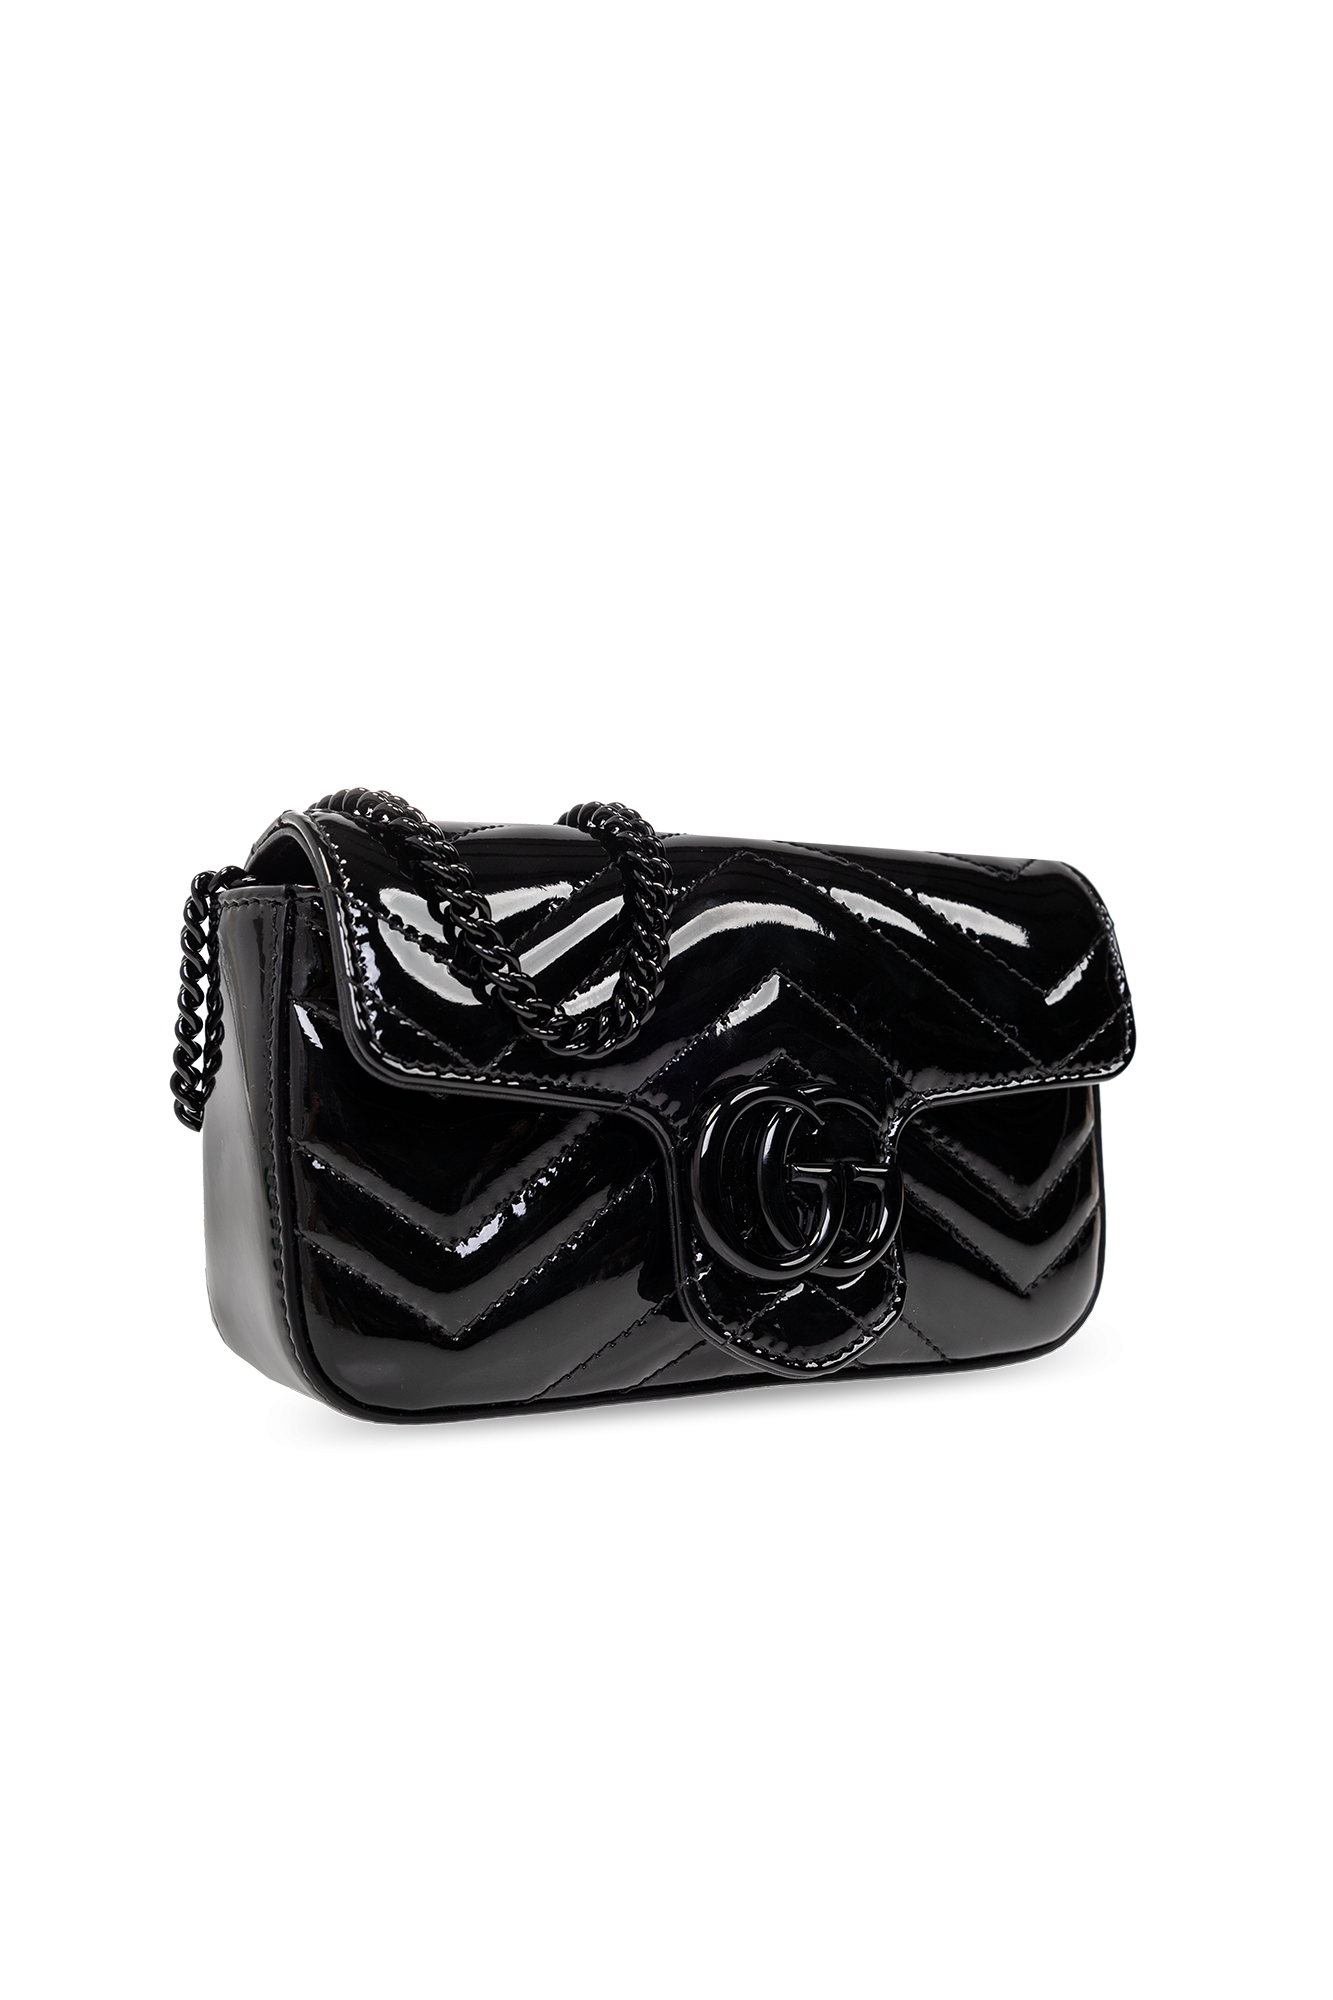 Gucci GG Marmont Patent Super Mini Bag Black Patent Leather in